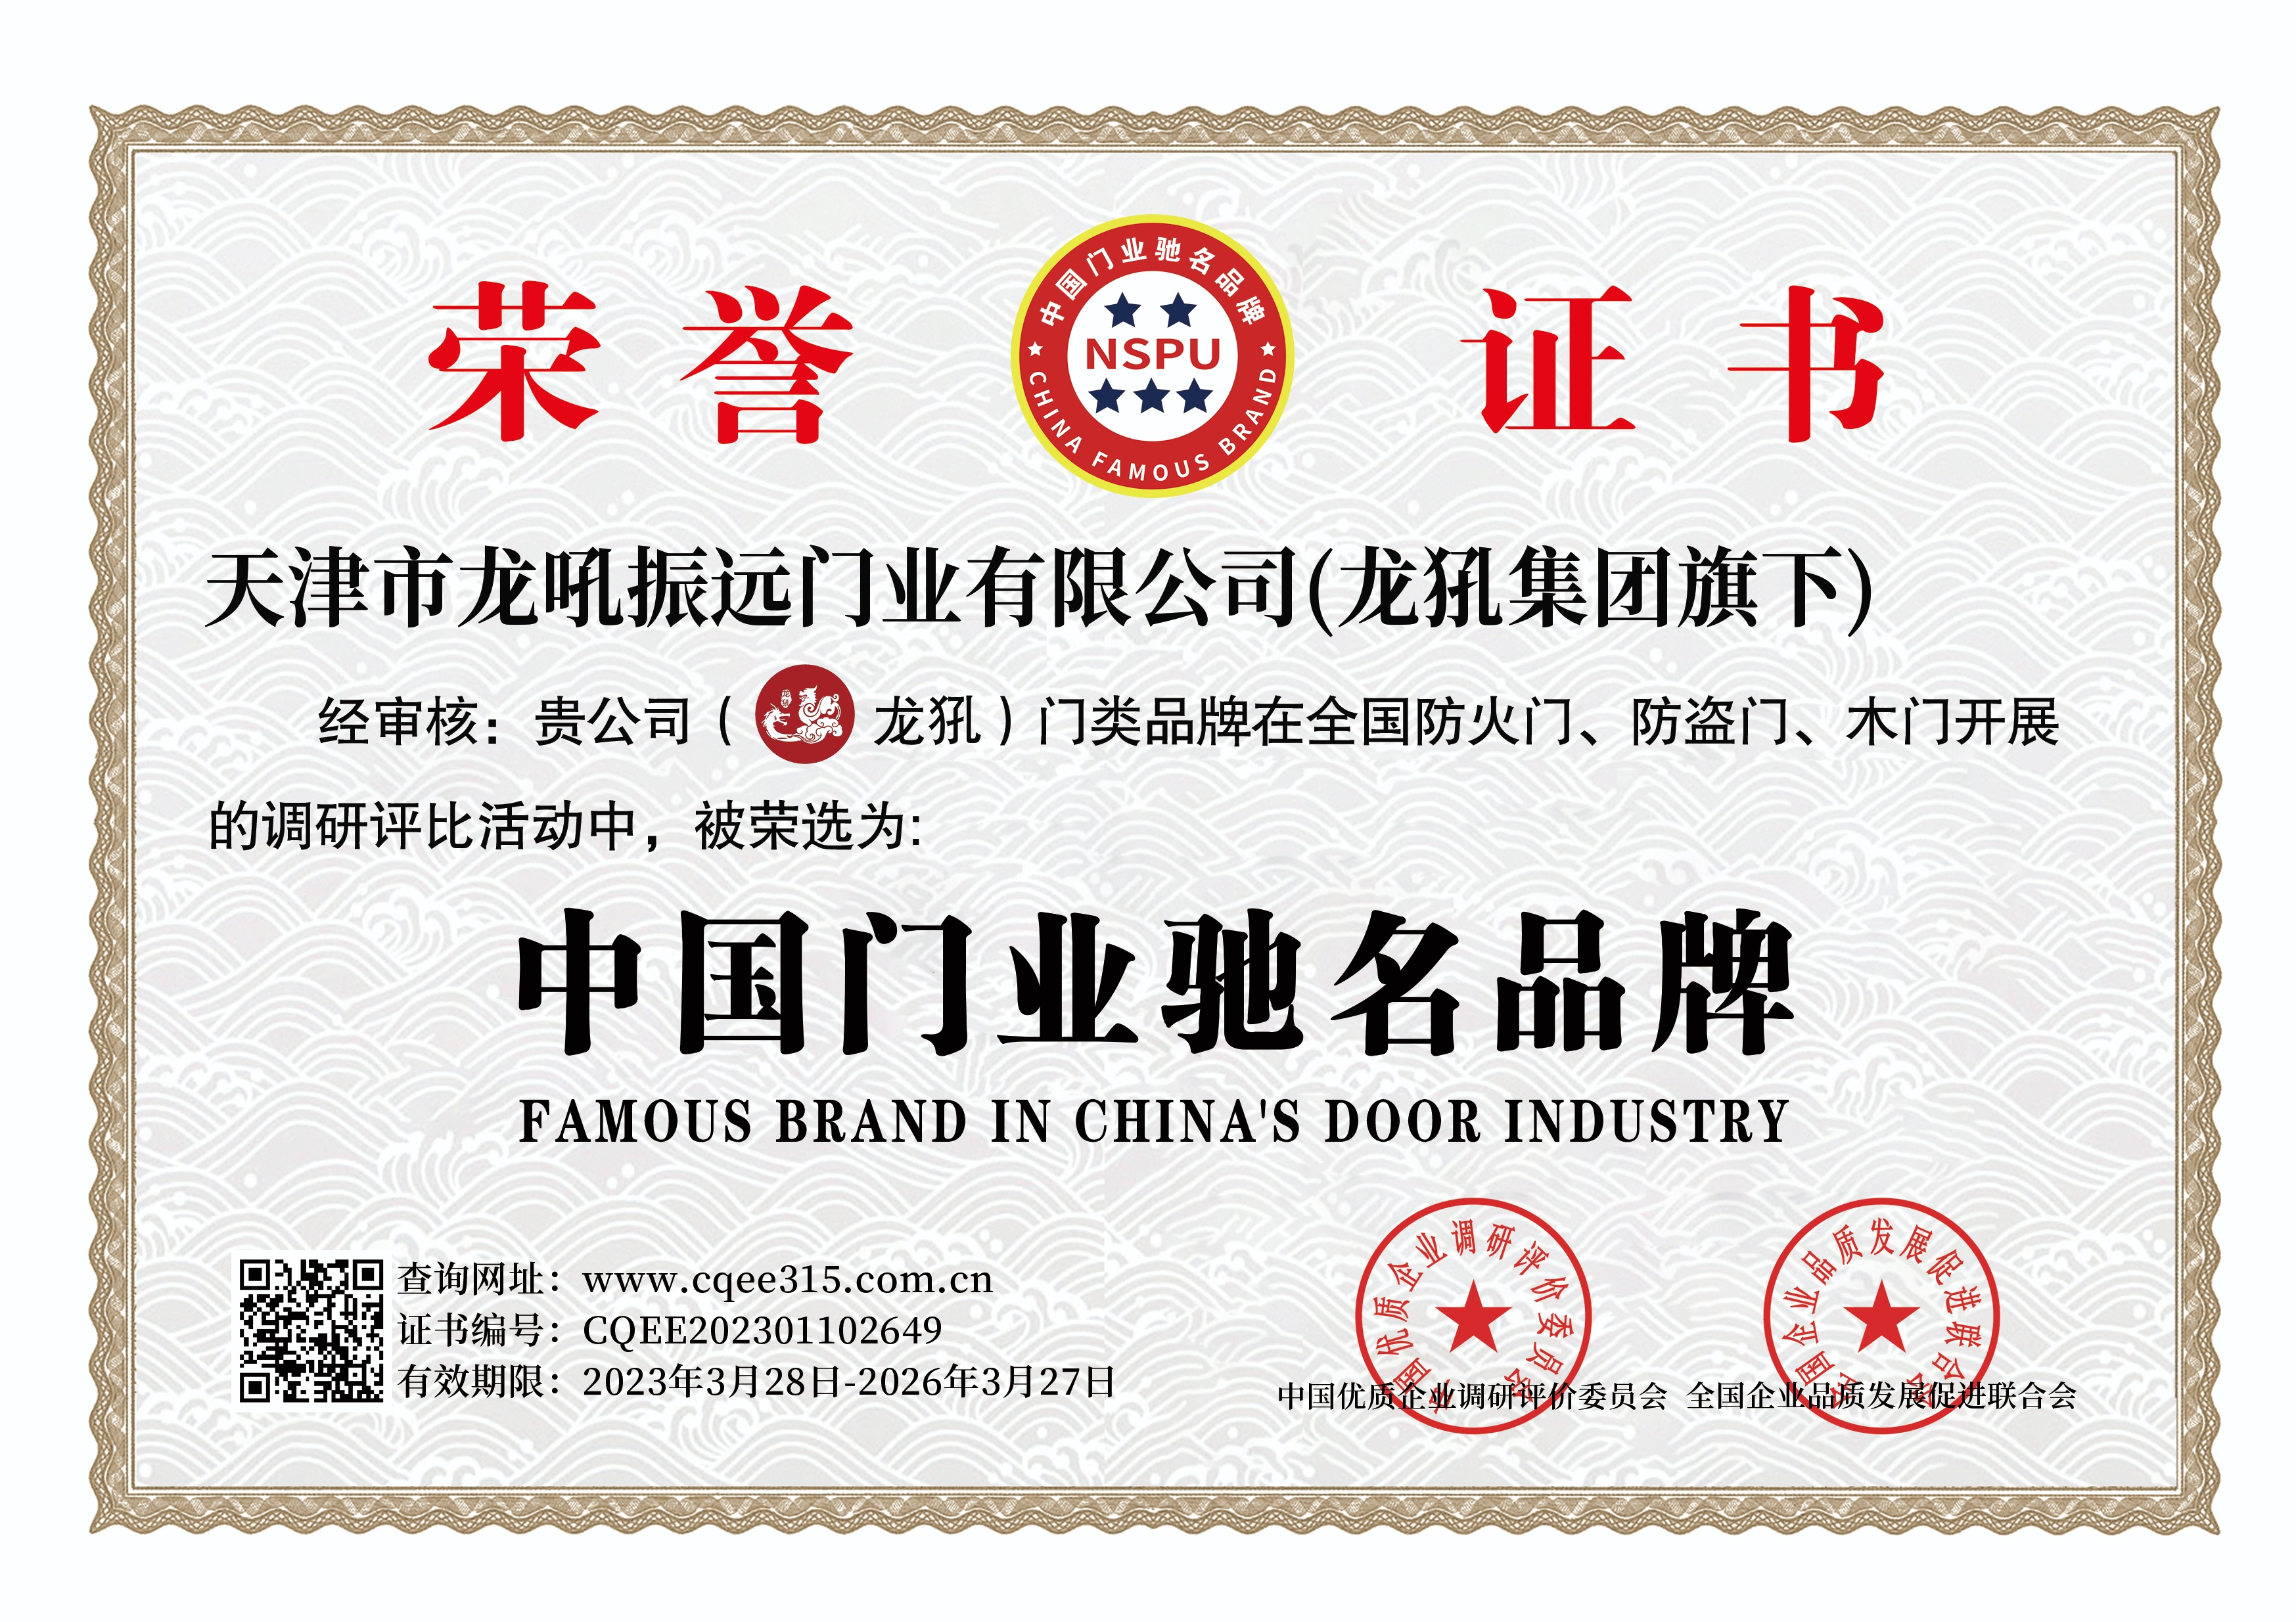 慶祝龍犼品牌獲得中國馳名品牌稱號  龍犼集團企業獲得一級安裝資質